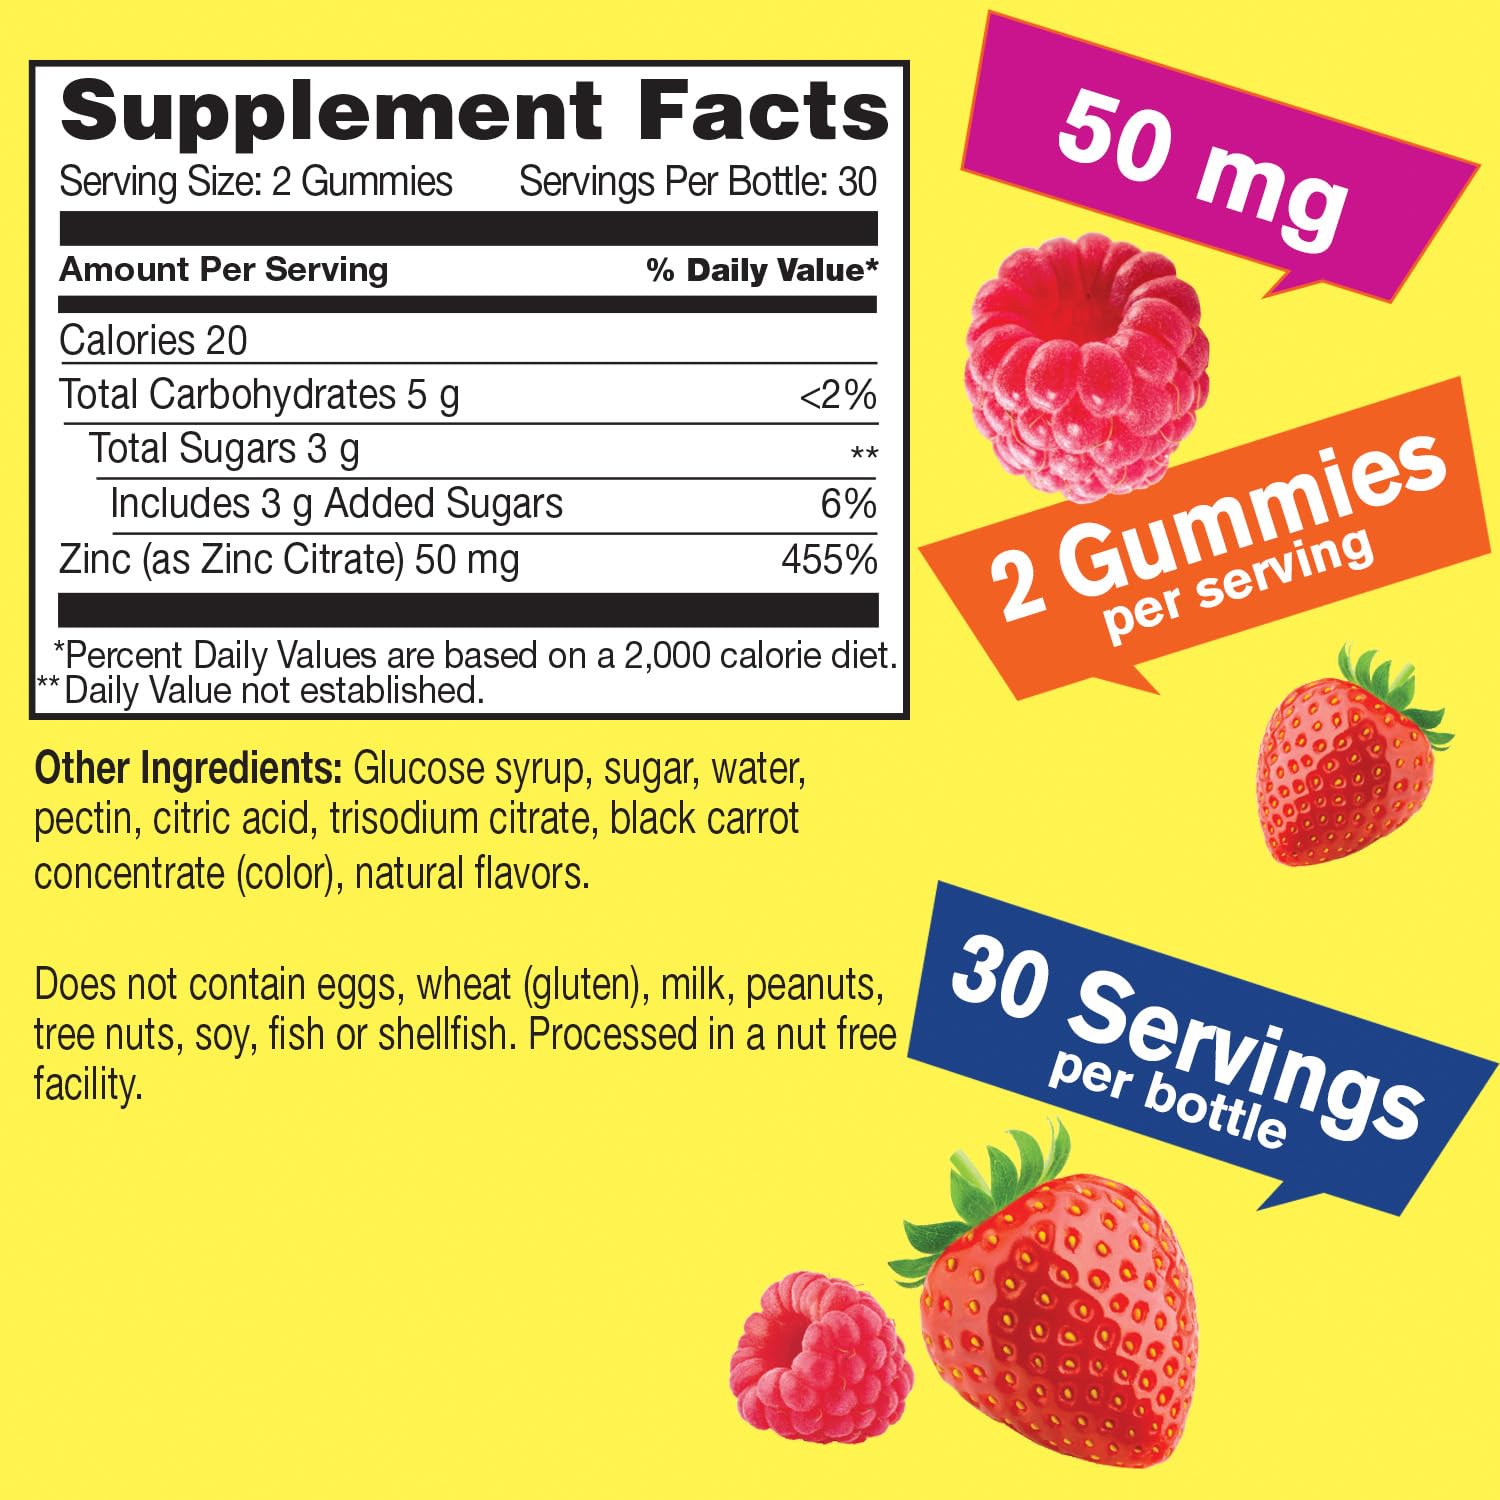 WellYeah Zinc + Vitamin B Complex, Gummies Bundle - Great Tasting, Vitamin Supplement, Gluten Free, GMO Free, Chewable Gummy